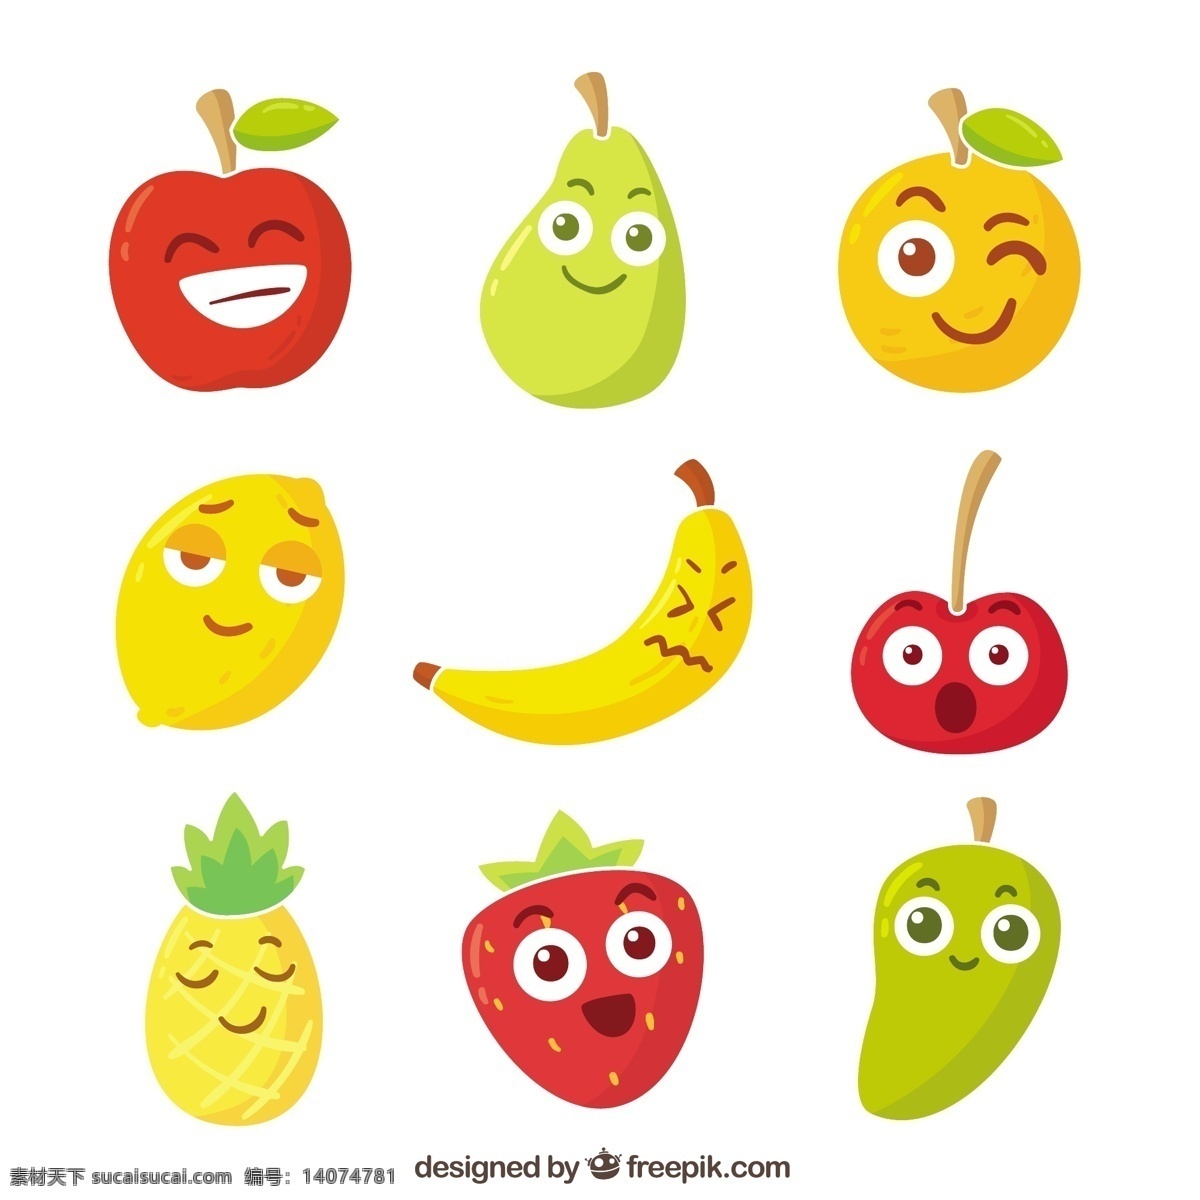 面部 表情 果实 性状 品种 食品 夏季 水果 颜色 橙 快乐 热带 苹果 平板 天然 香蕉 健康 平面设计 草莓 有趣 菠萝 柠檬 滑稽